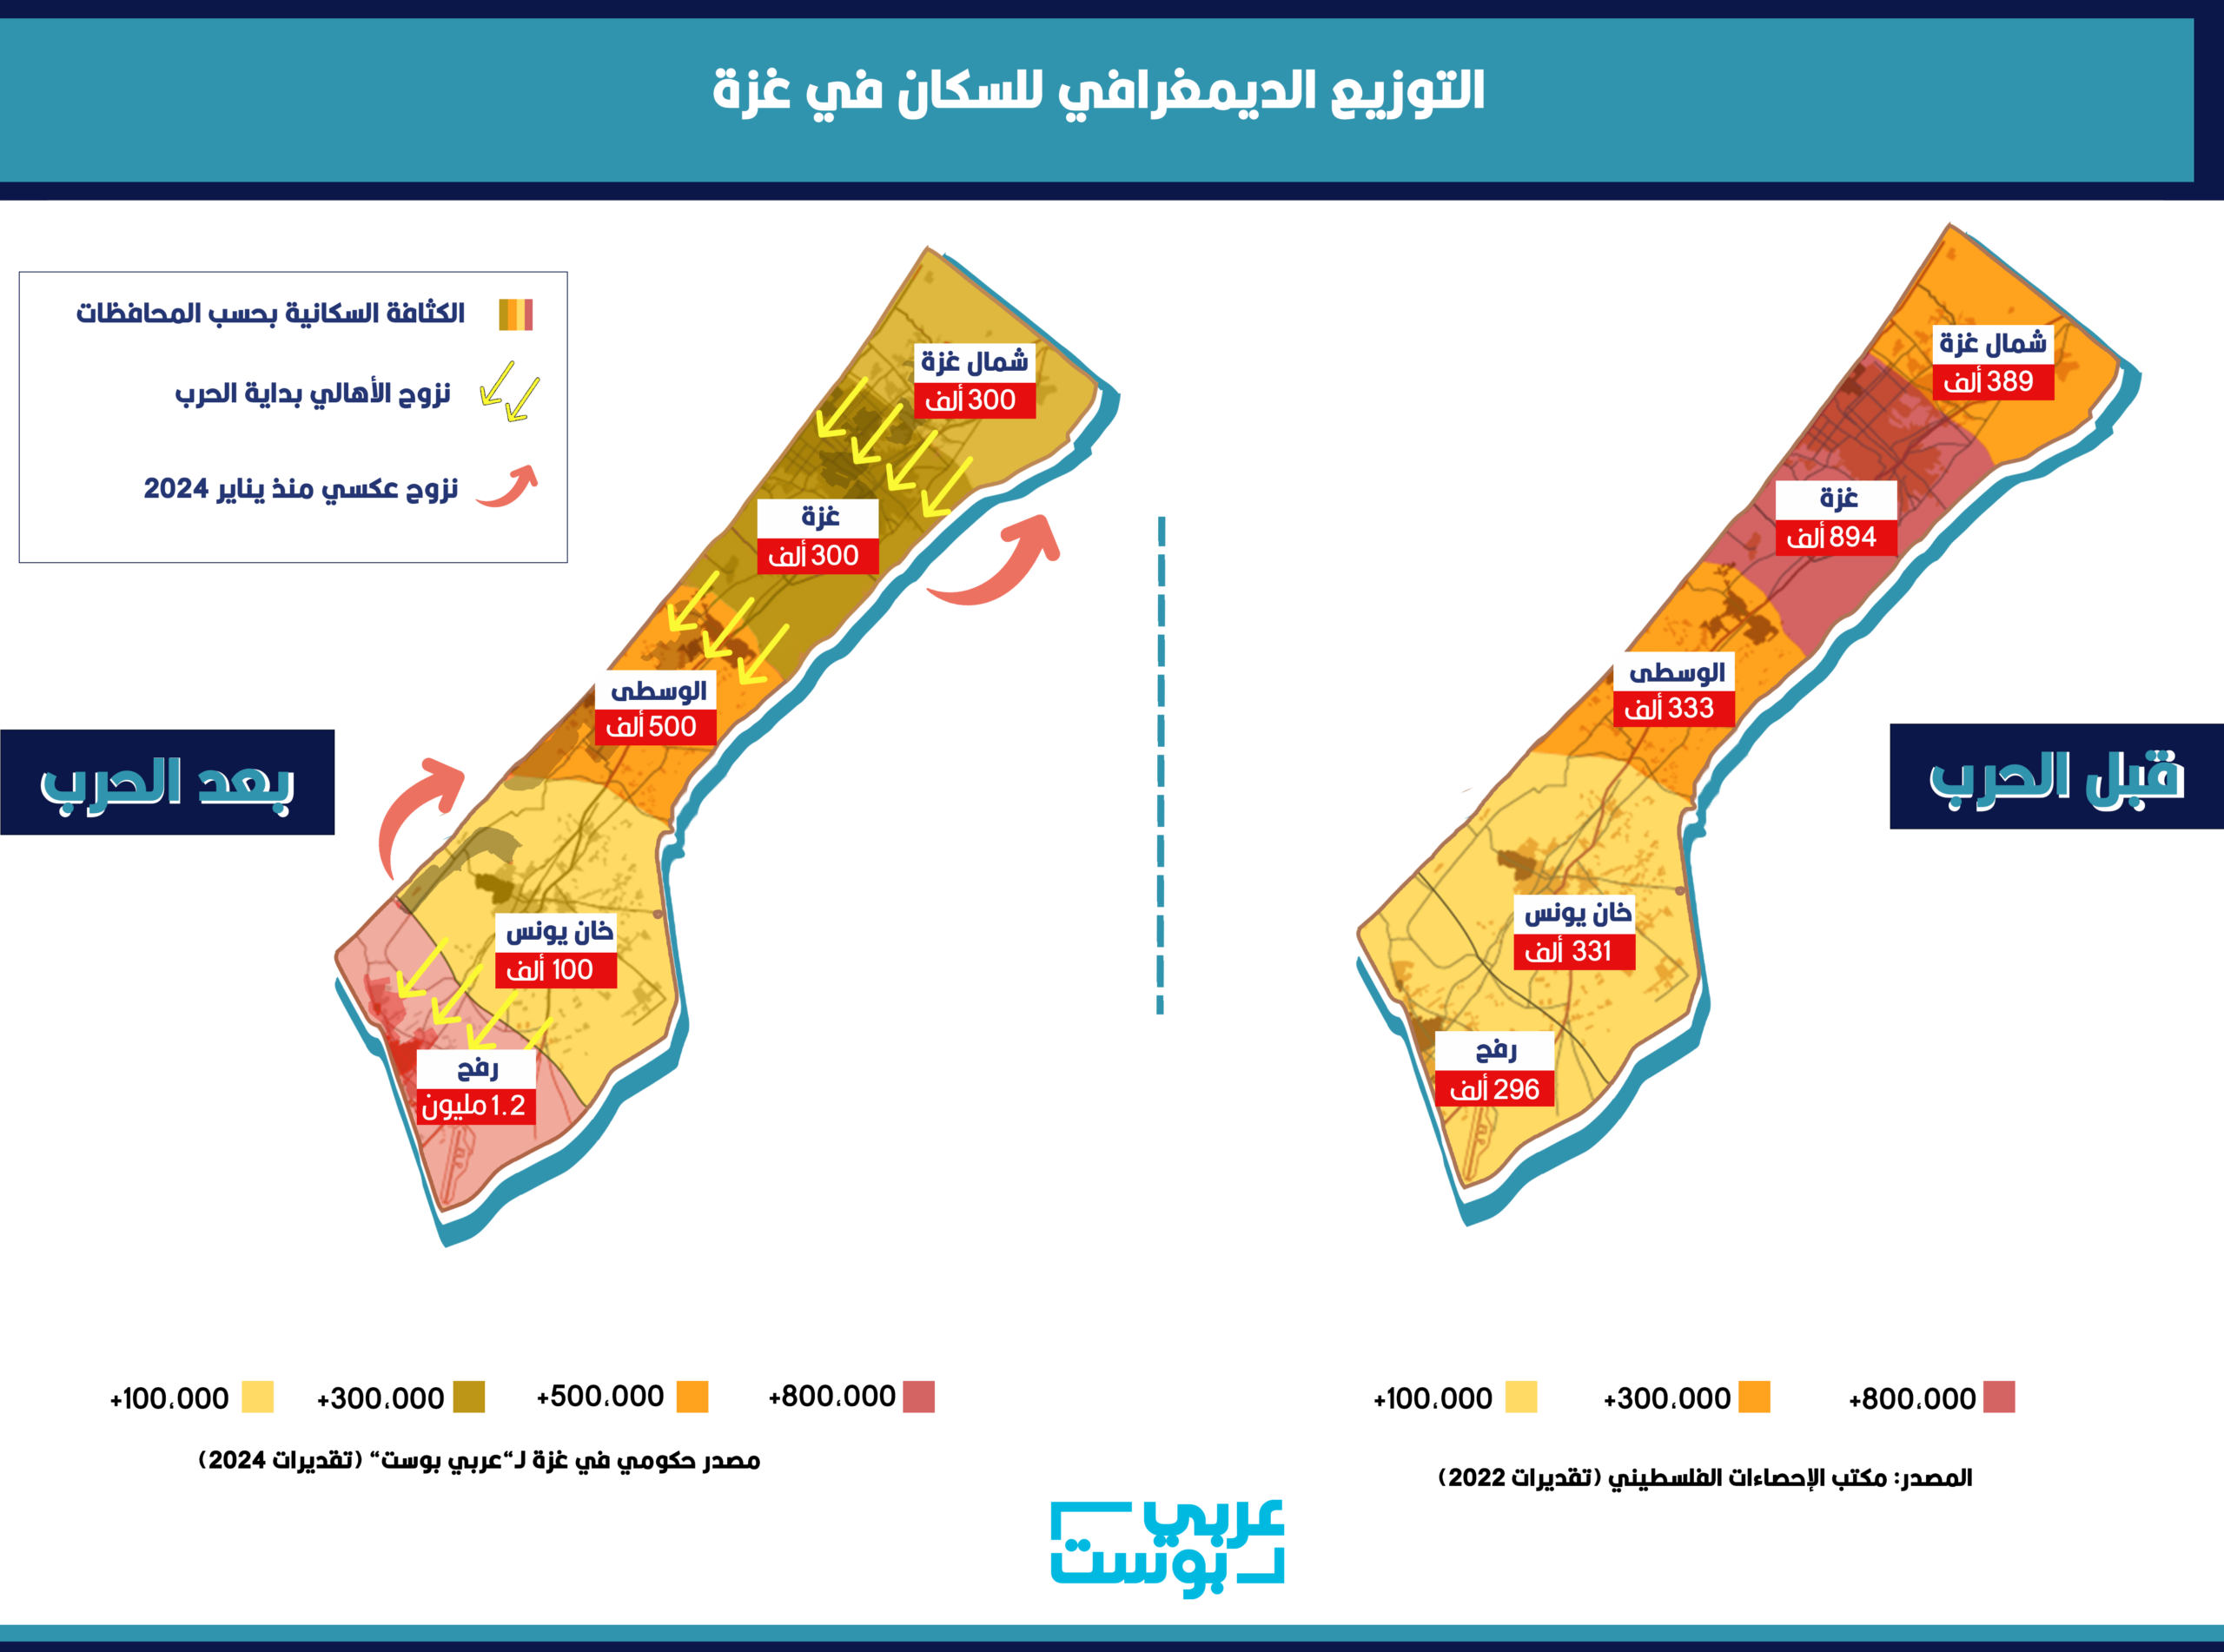 تقلص مساحة غزة بالنسبة للسكان بفعل العدوان الإسرائيلي أدى إلى تكدسهم - عربي بوست